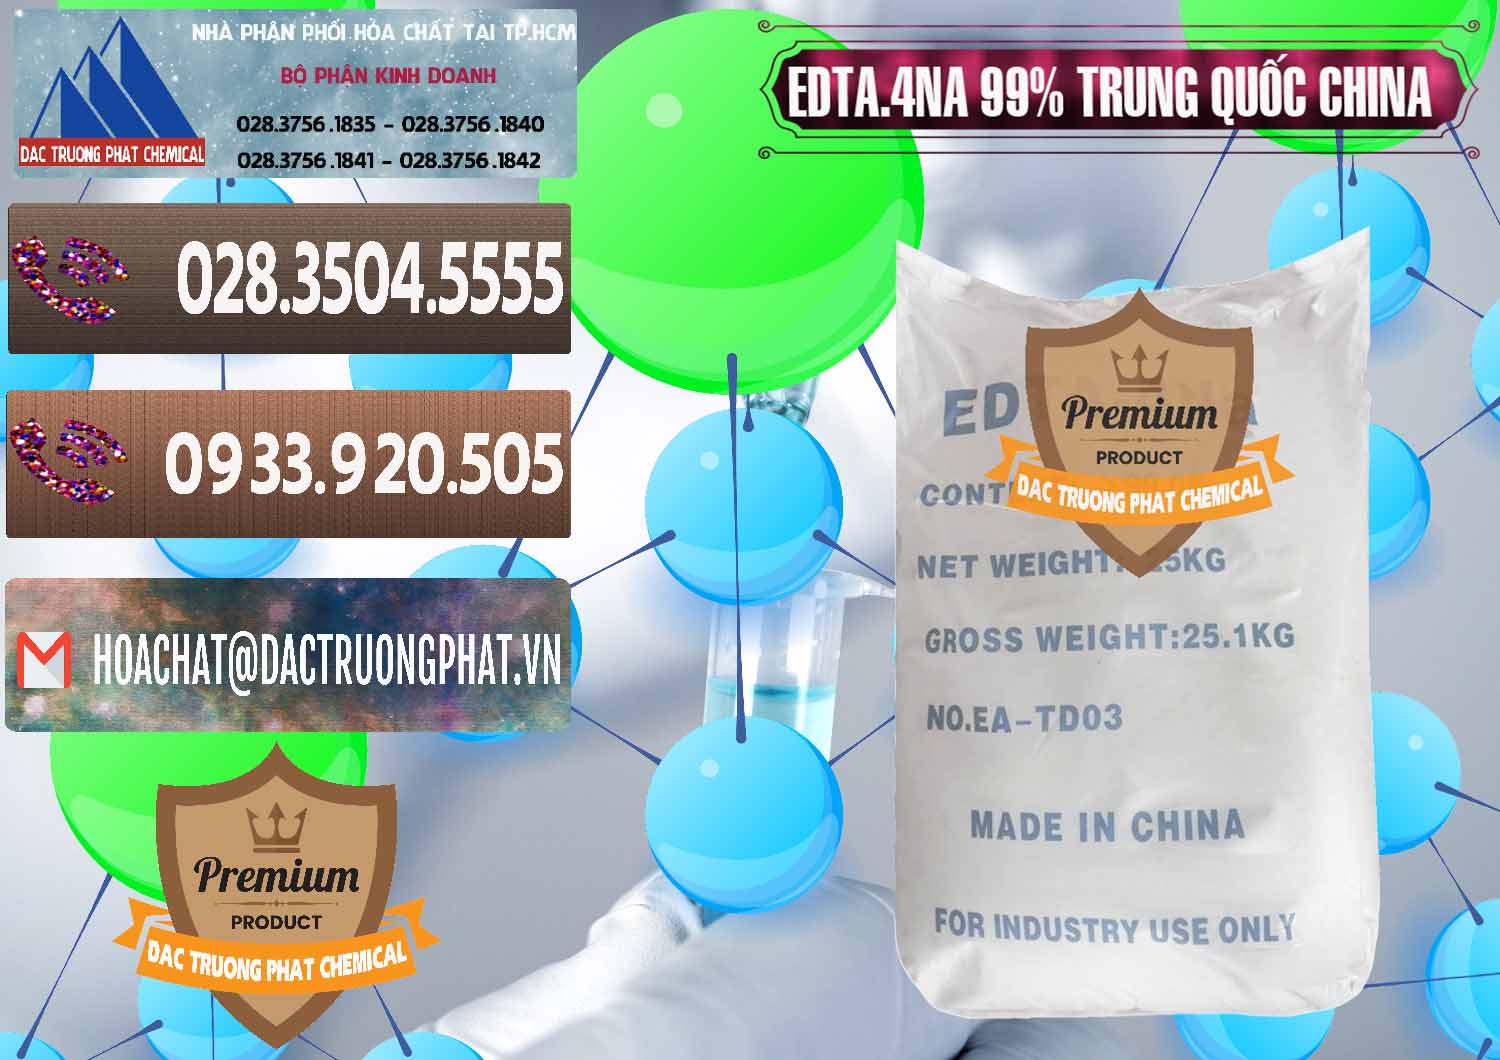 Cty chuyên bán và cung ứng EDTA.4NA - EDTA Muối 99% Trung Quốc China - 0292 - Chuyên phân phối & cung ứng hóa chất tại TP.HCM - hoachatviet.net